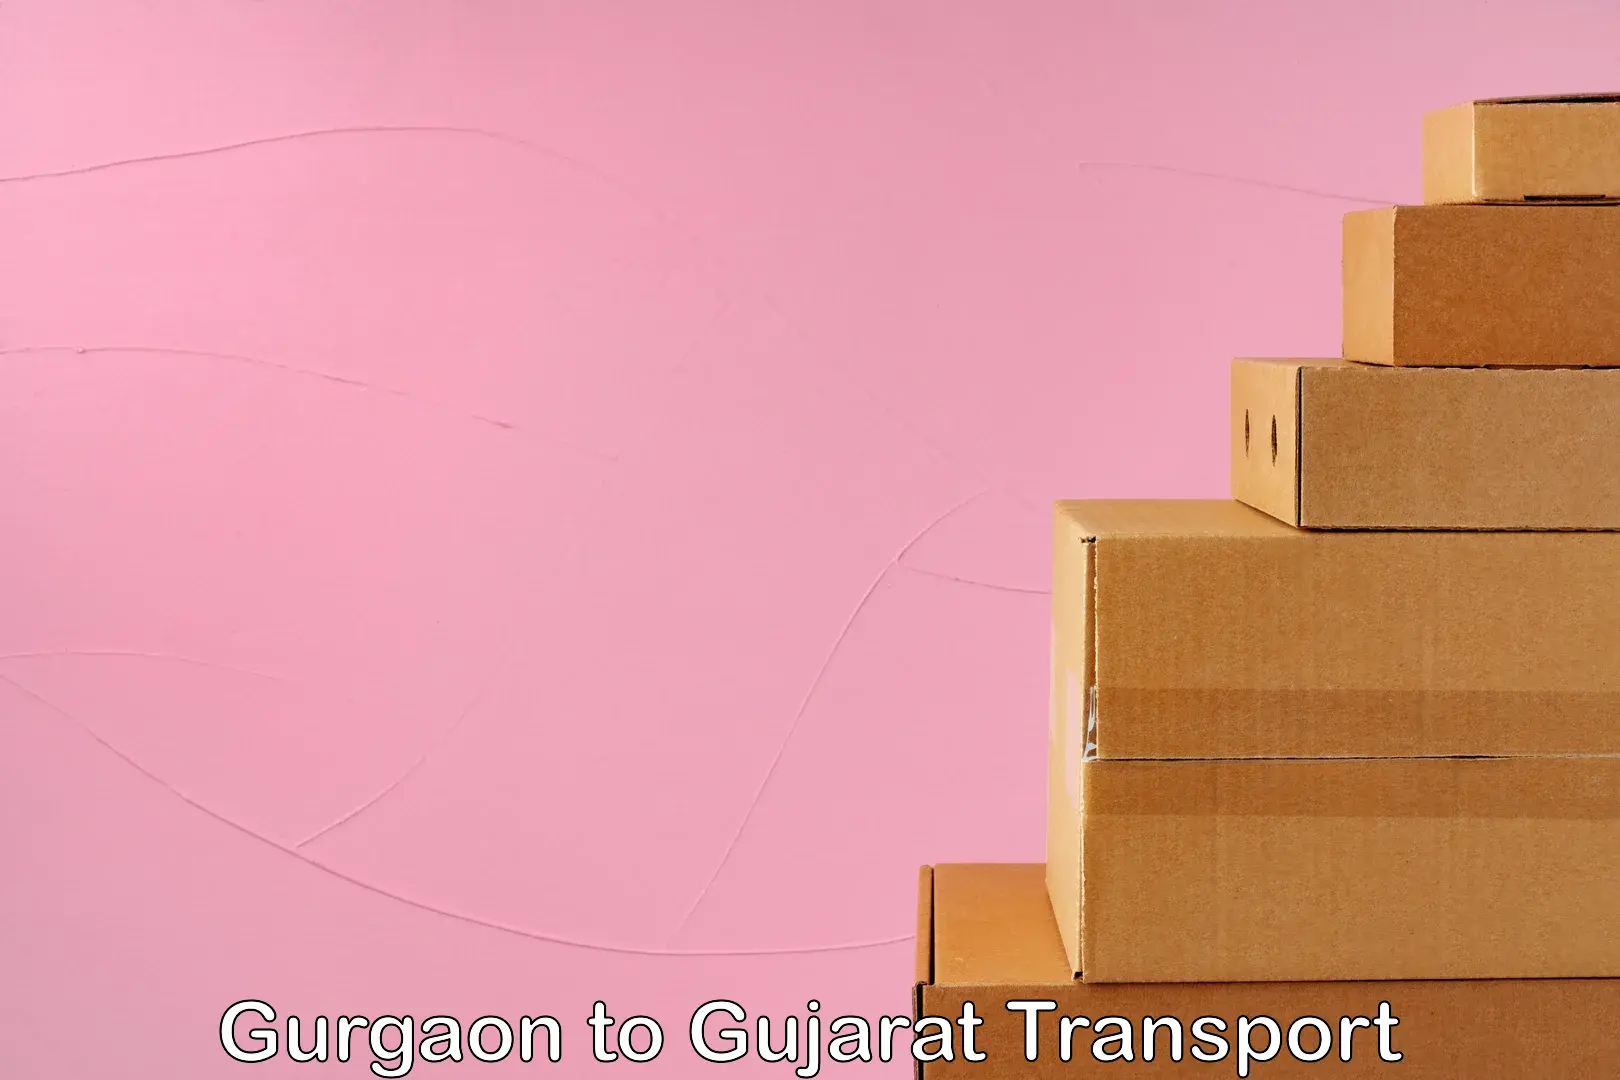 Bike shipping service Gurgaon to Gujarat